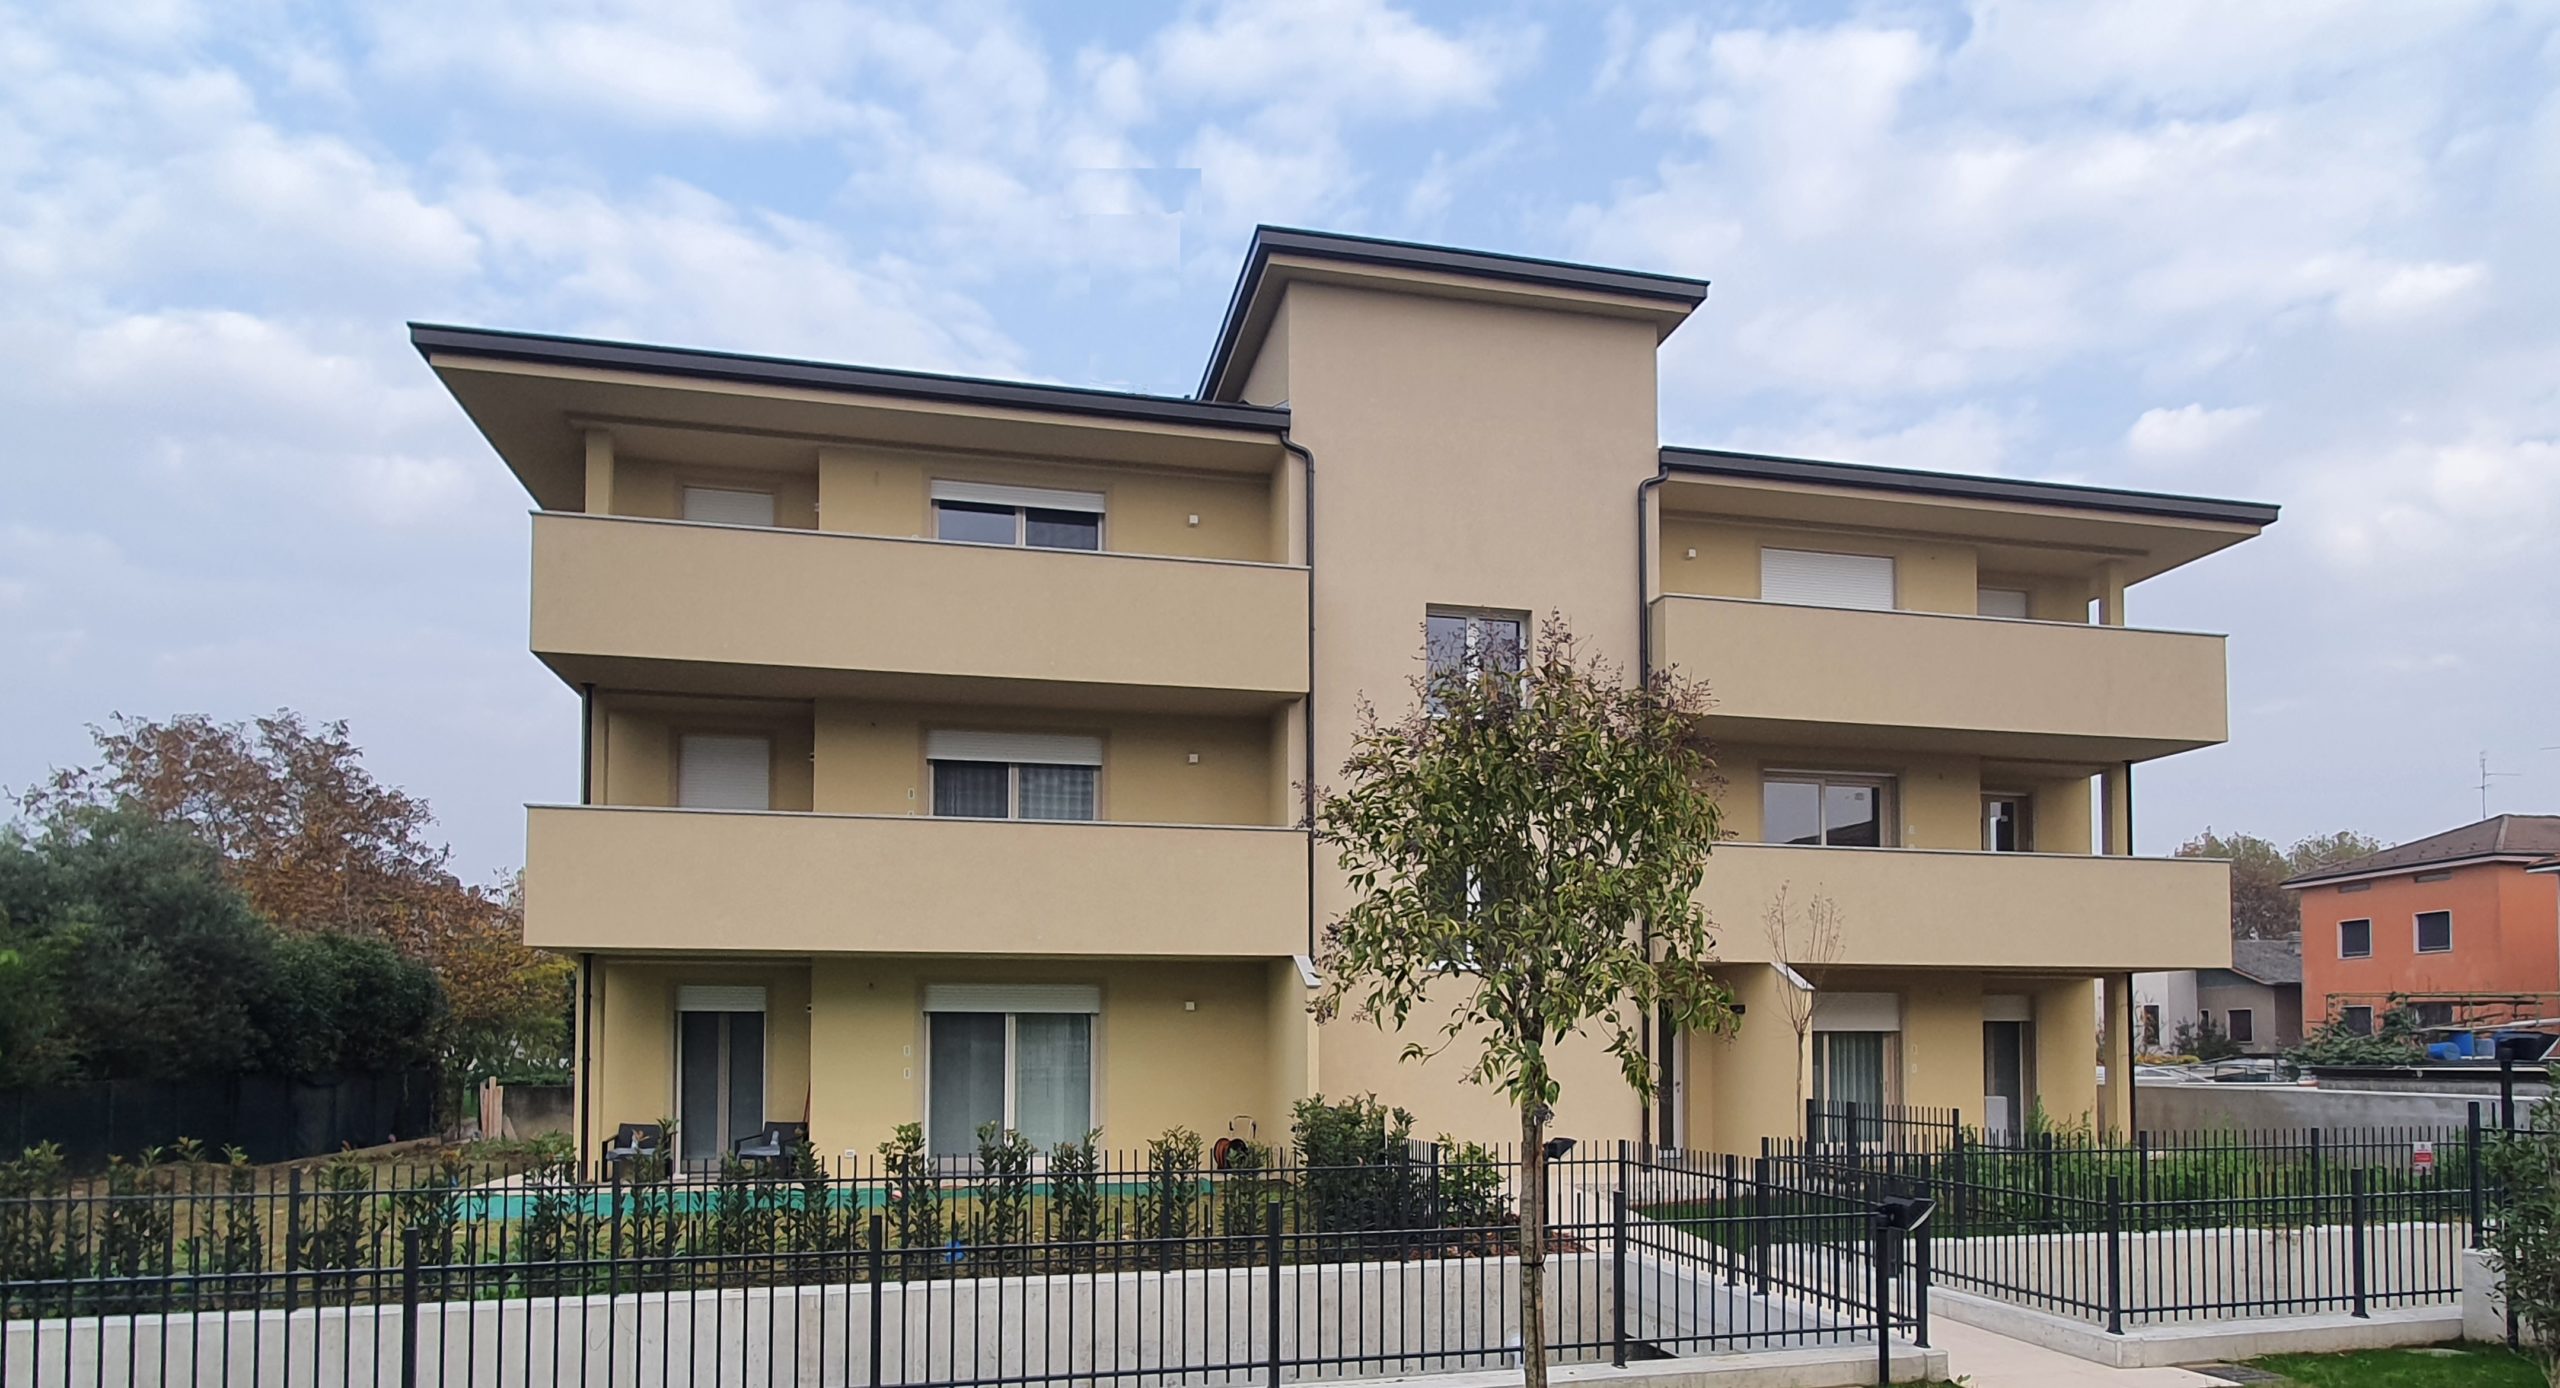 2018  Cassina de’ Pecchi  (Milano) Realizzazione edificio in Via XXV aprile: 6 unità residenziali